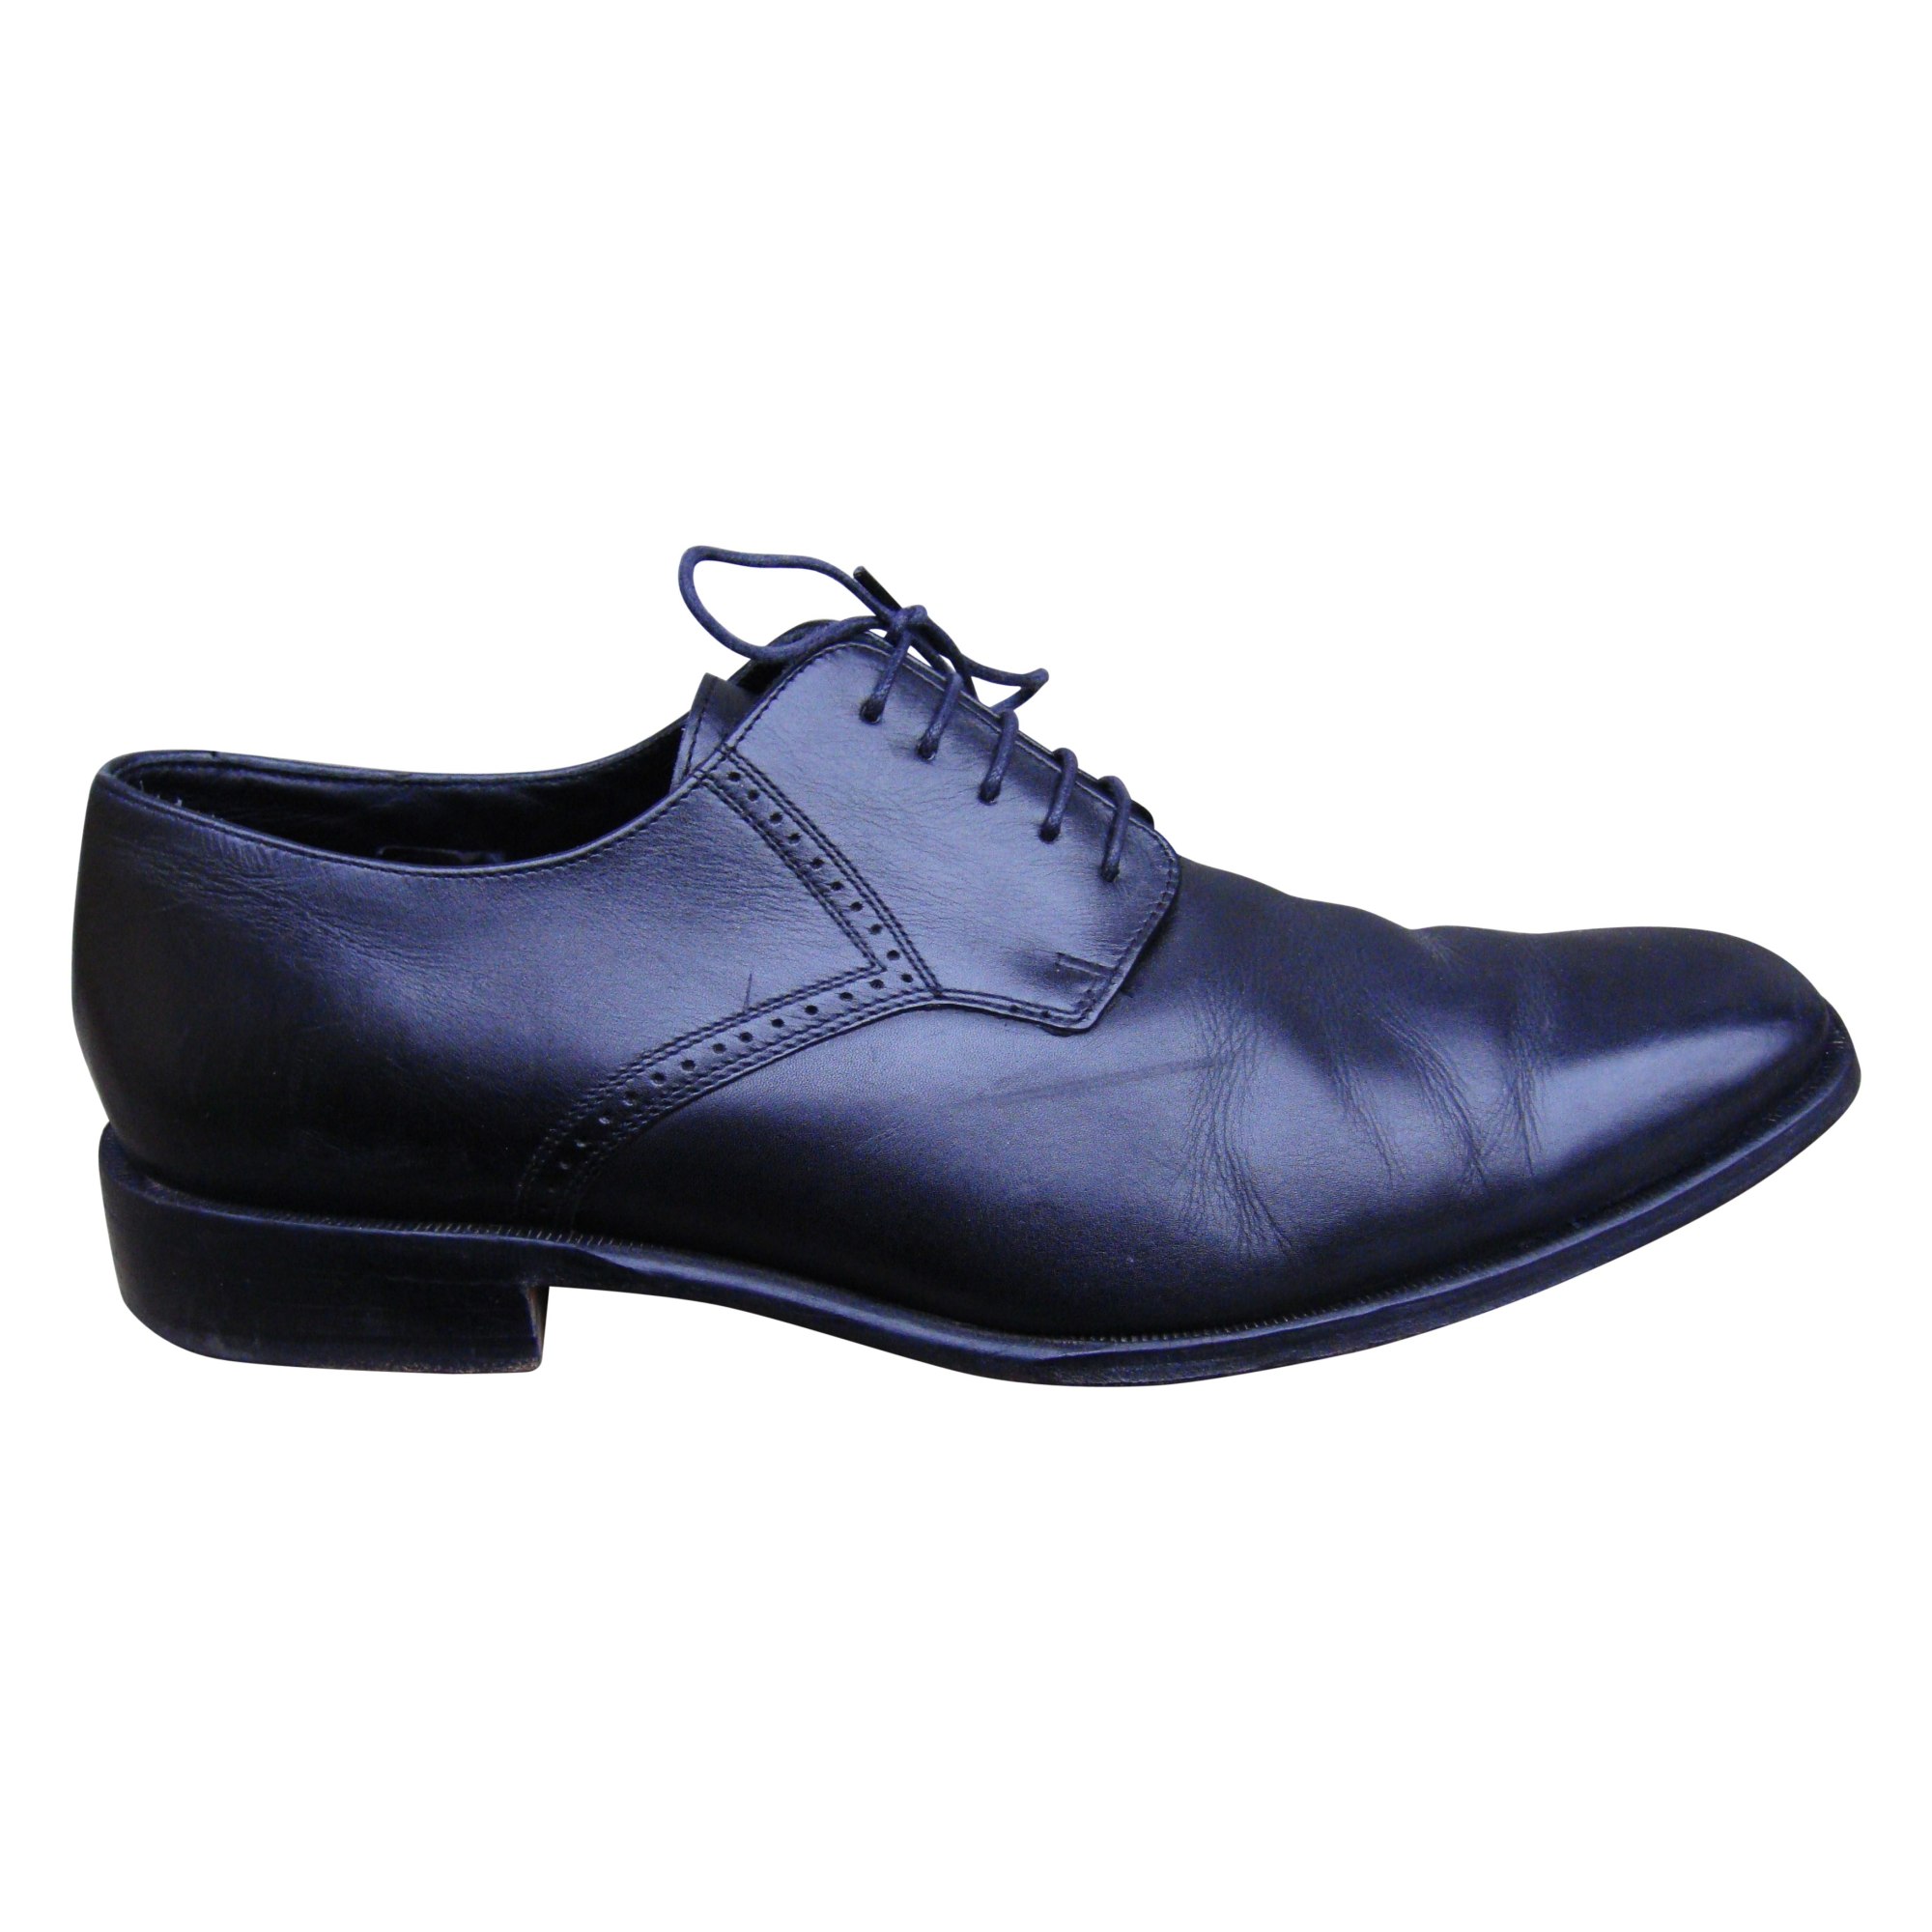 Chaussures à lacets PAUL SMITH 44 noir - 3347310